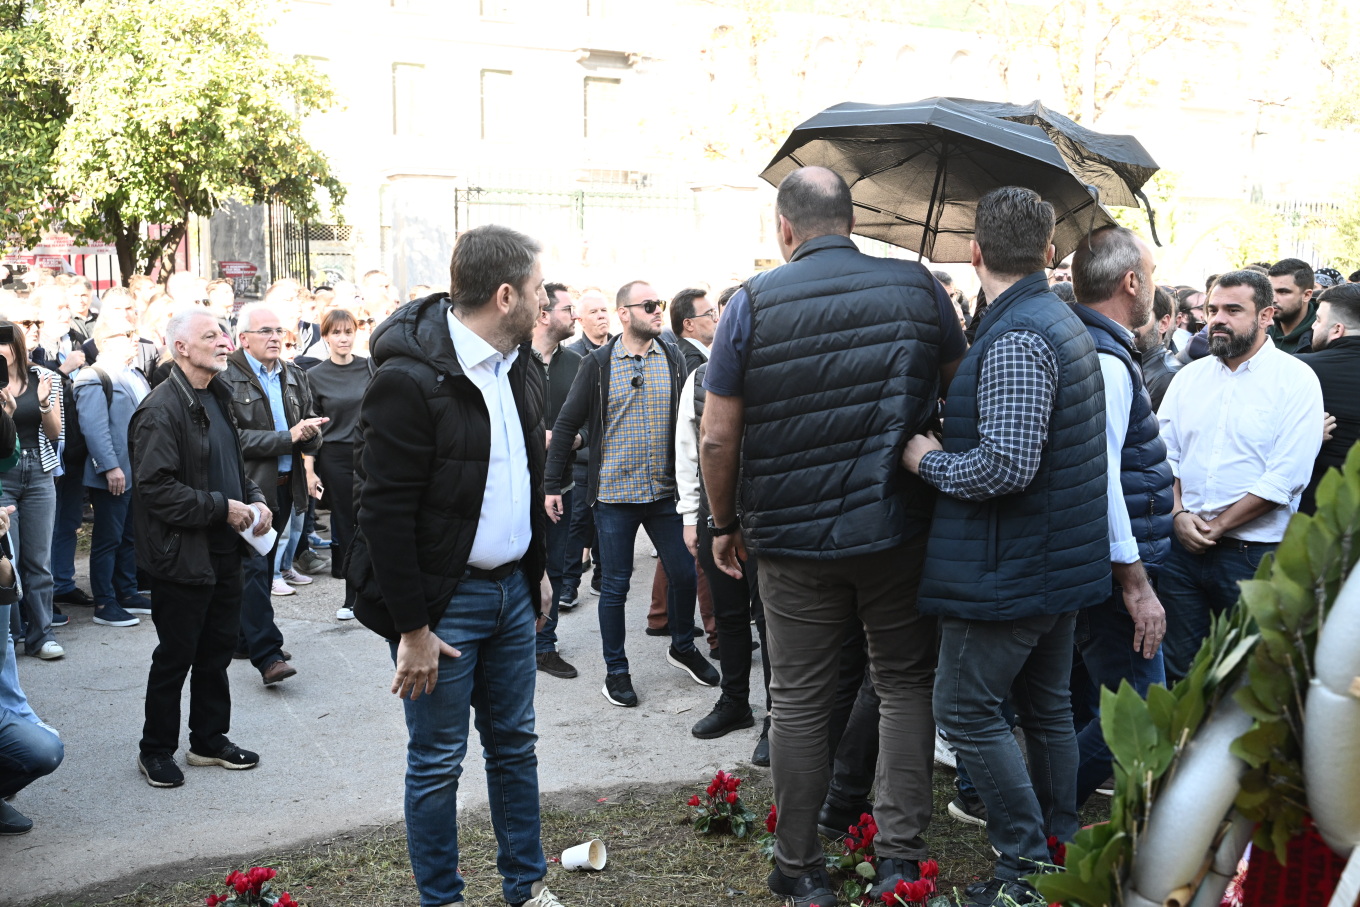 Στο Πολυτεχνείο ο Ανδρουλάκης – Του πέταξαν καφέδες, άνοιξαν ομπρέλες για να τον προστατεύσουν [Εικόνες]